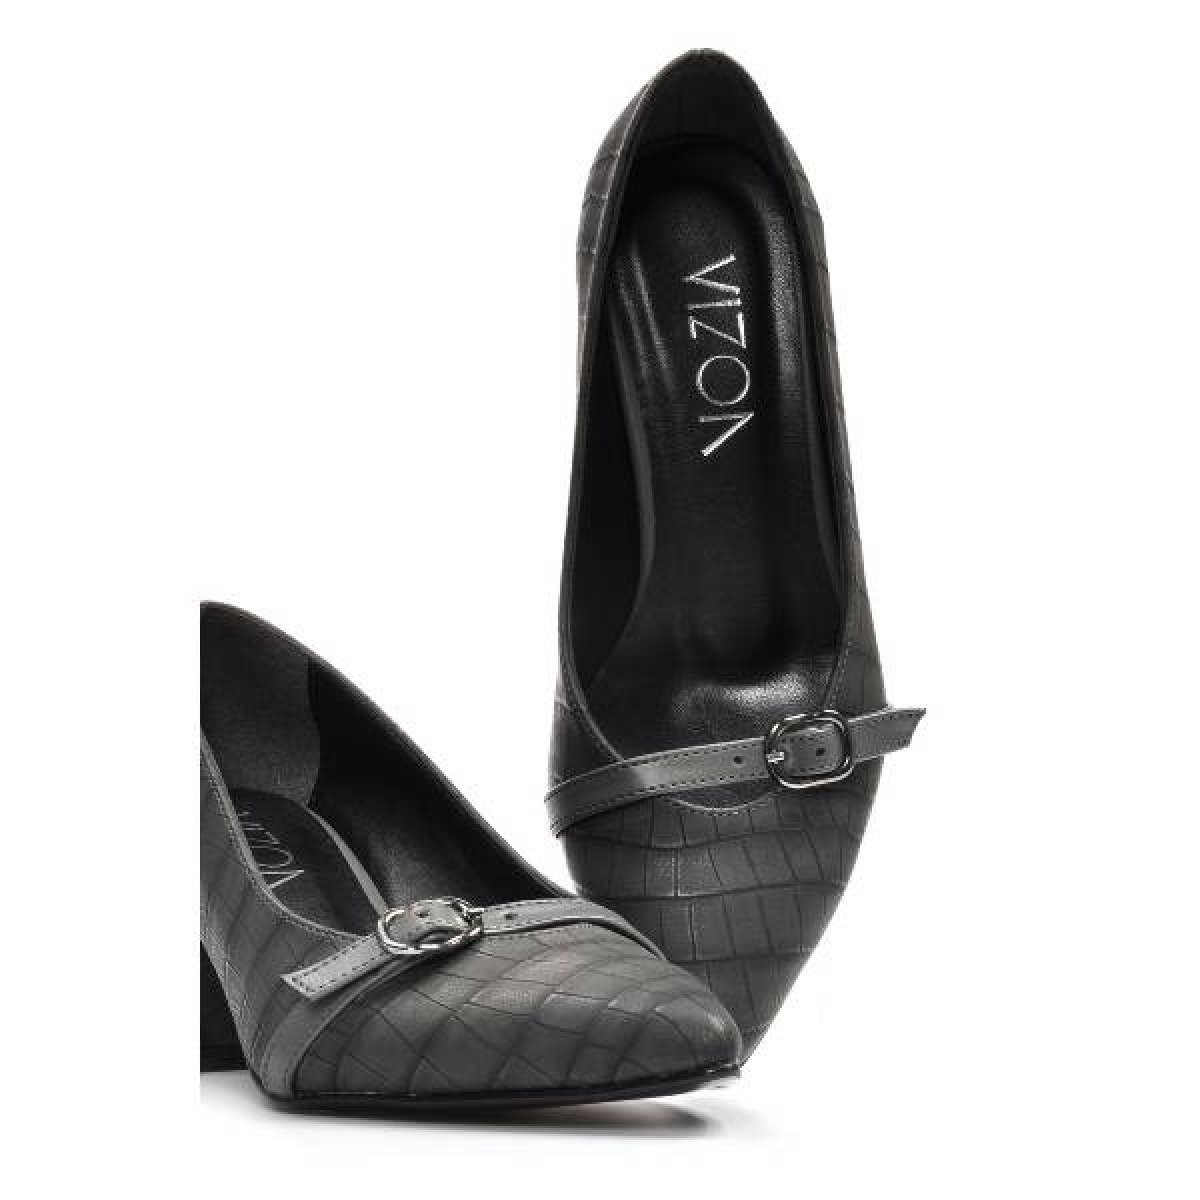 Flo Kadın  Gri-Kroko Klasik Topuklu Ayakkabı VZN19-110K. 6